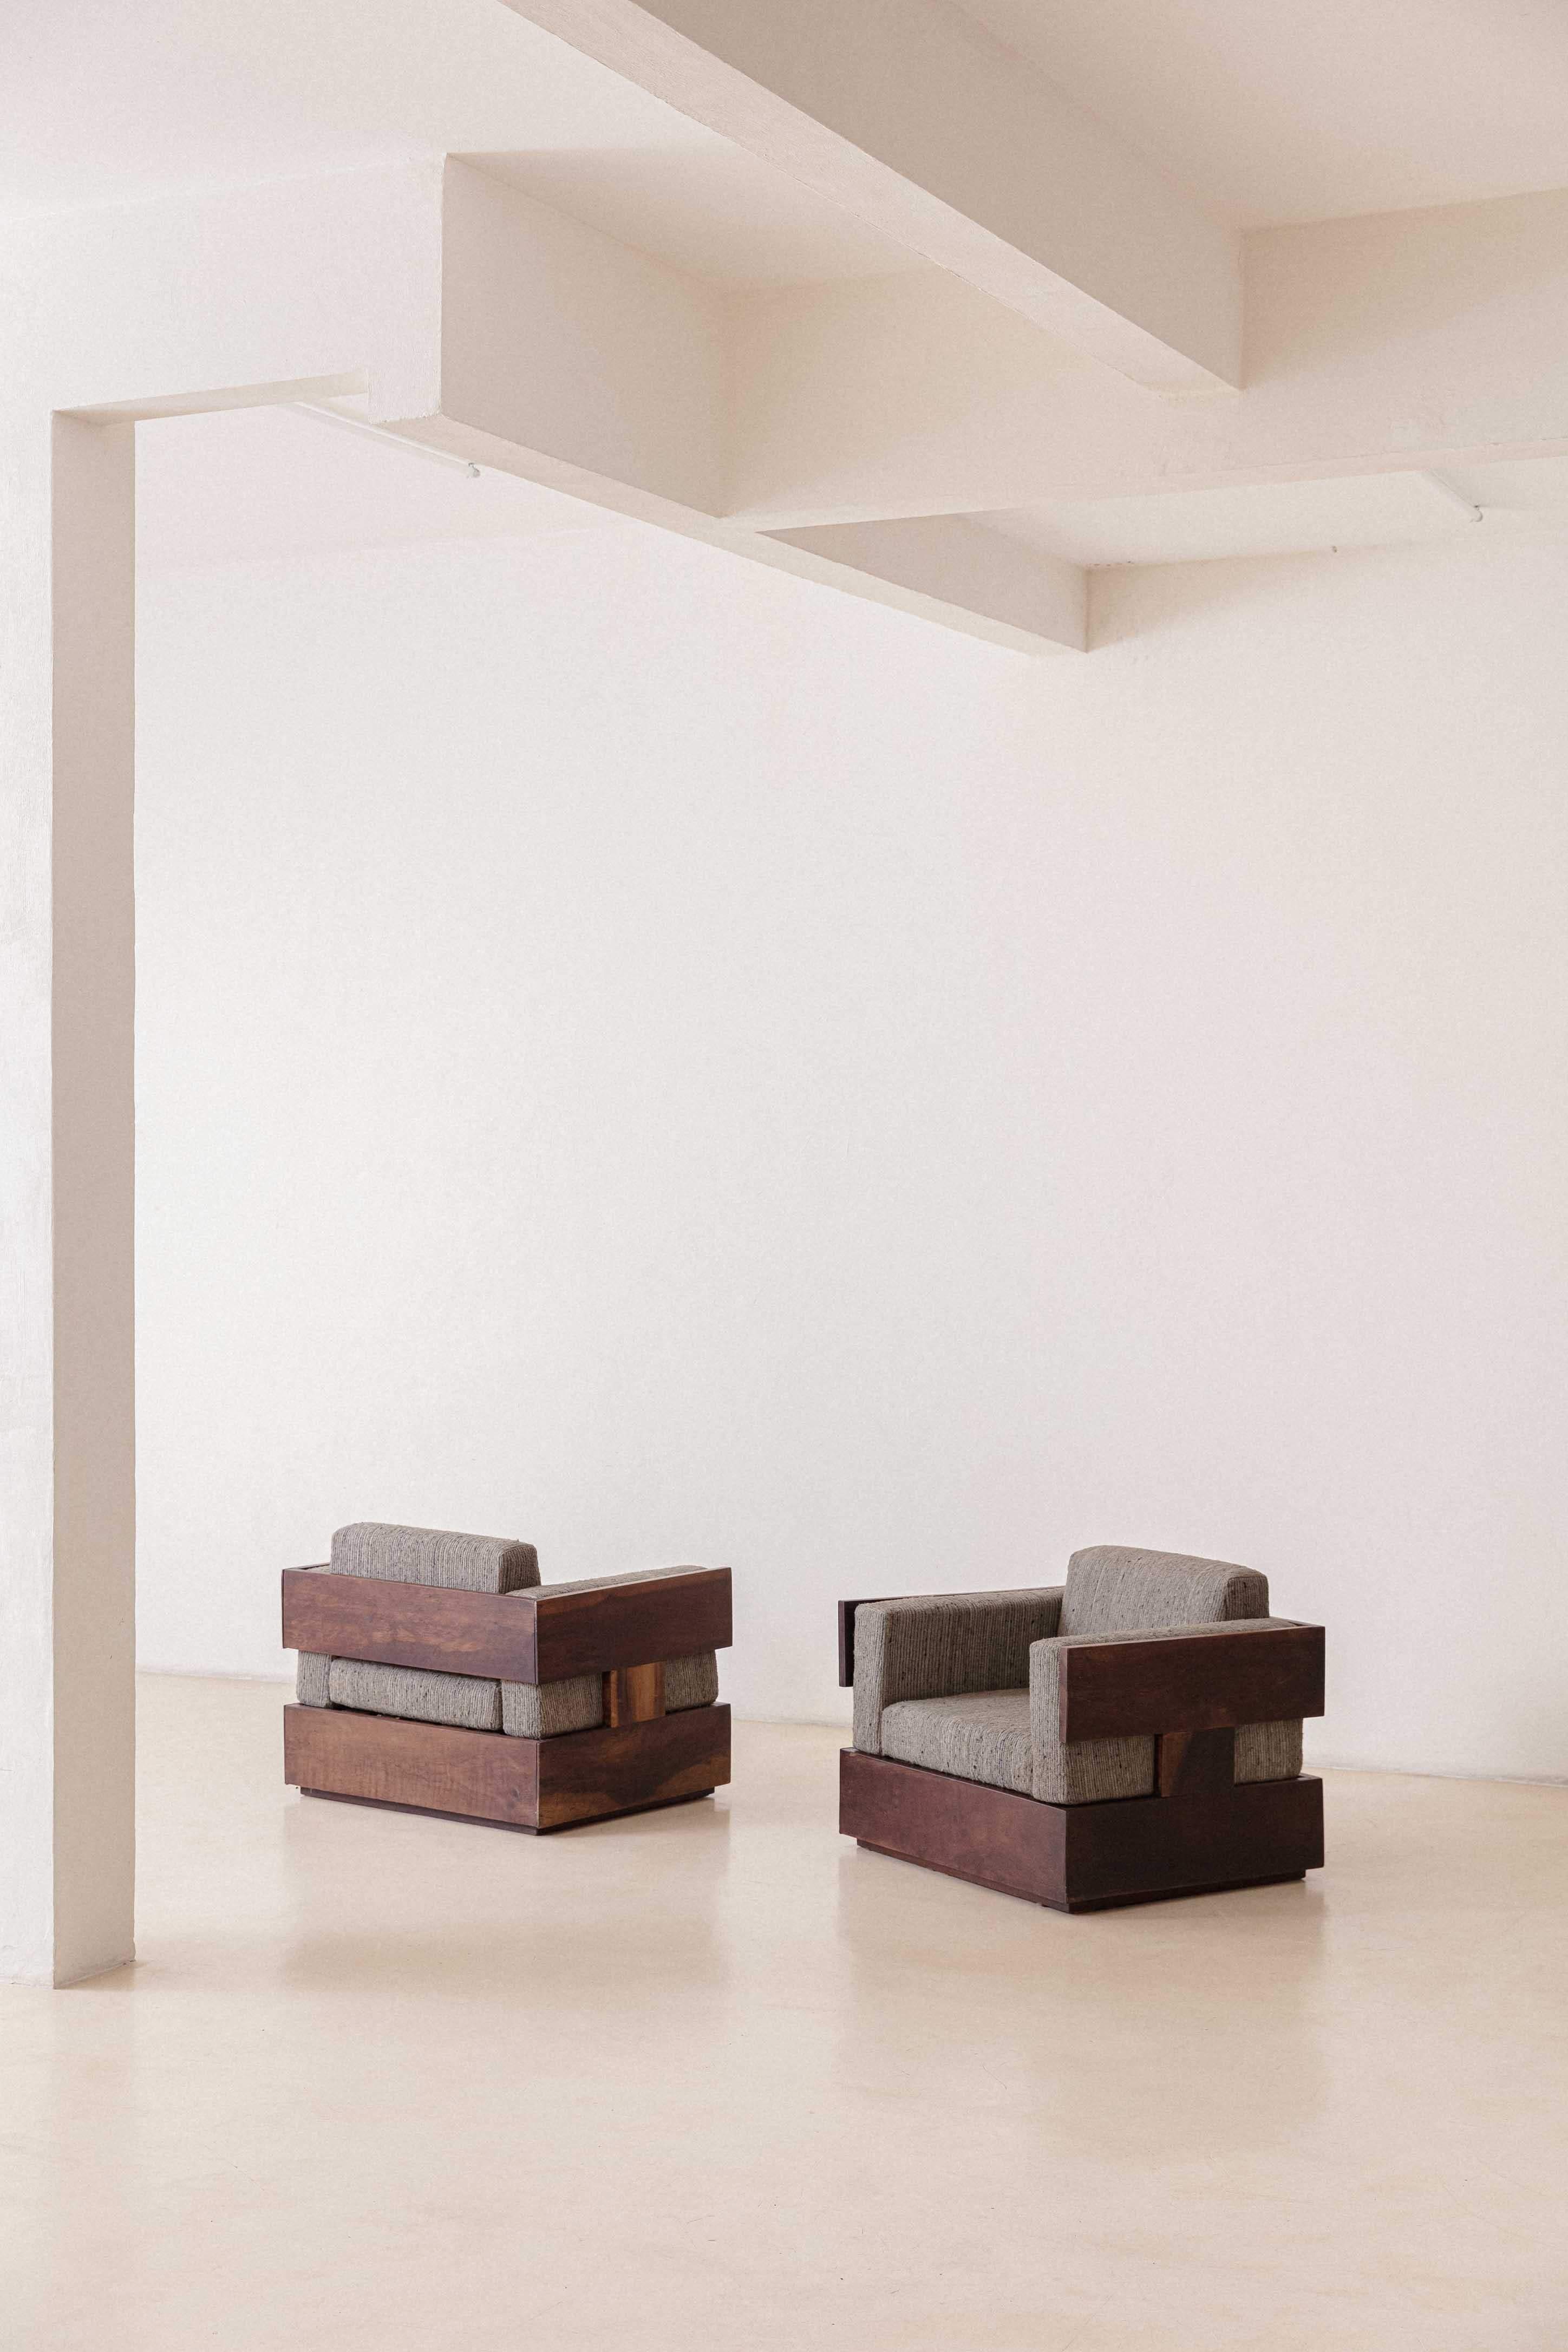 La société brésilienne Celina Decorações, basée à Rio de Janeiro, a signé dans les années 1960 l'une des lignes les plus modernes du mobilier brésilien.
Ces fauteuils en bois de rose ont des coussins détachés, une menace généralisée adoptée par